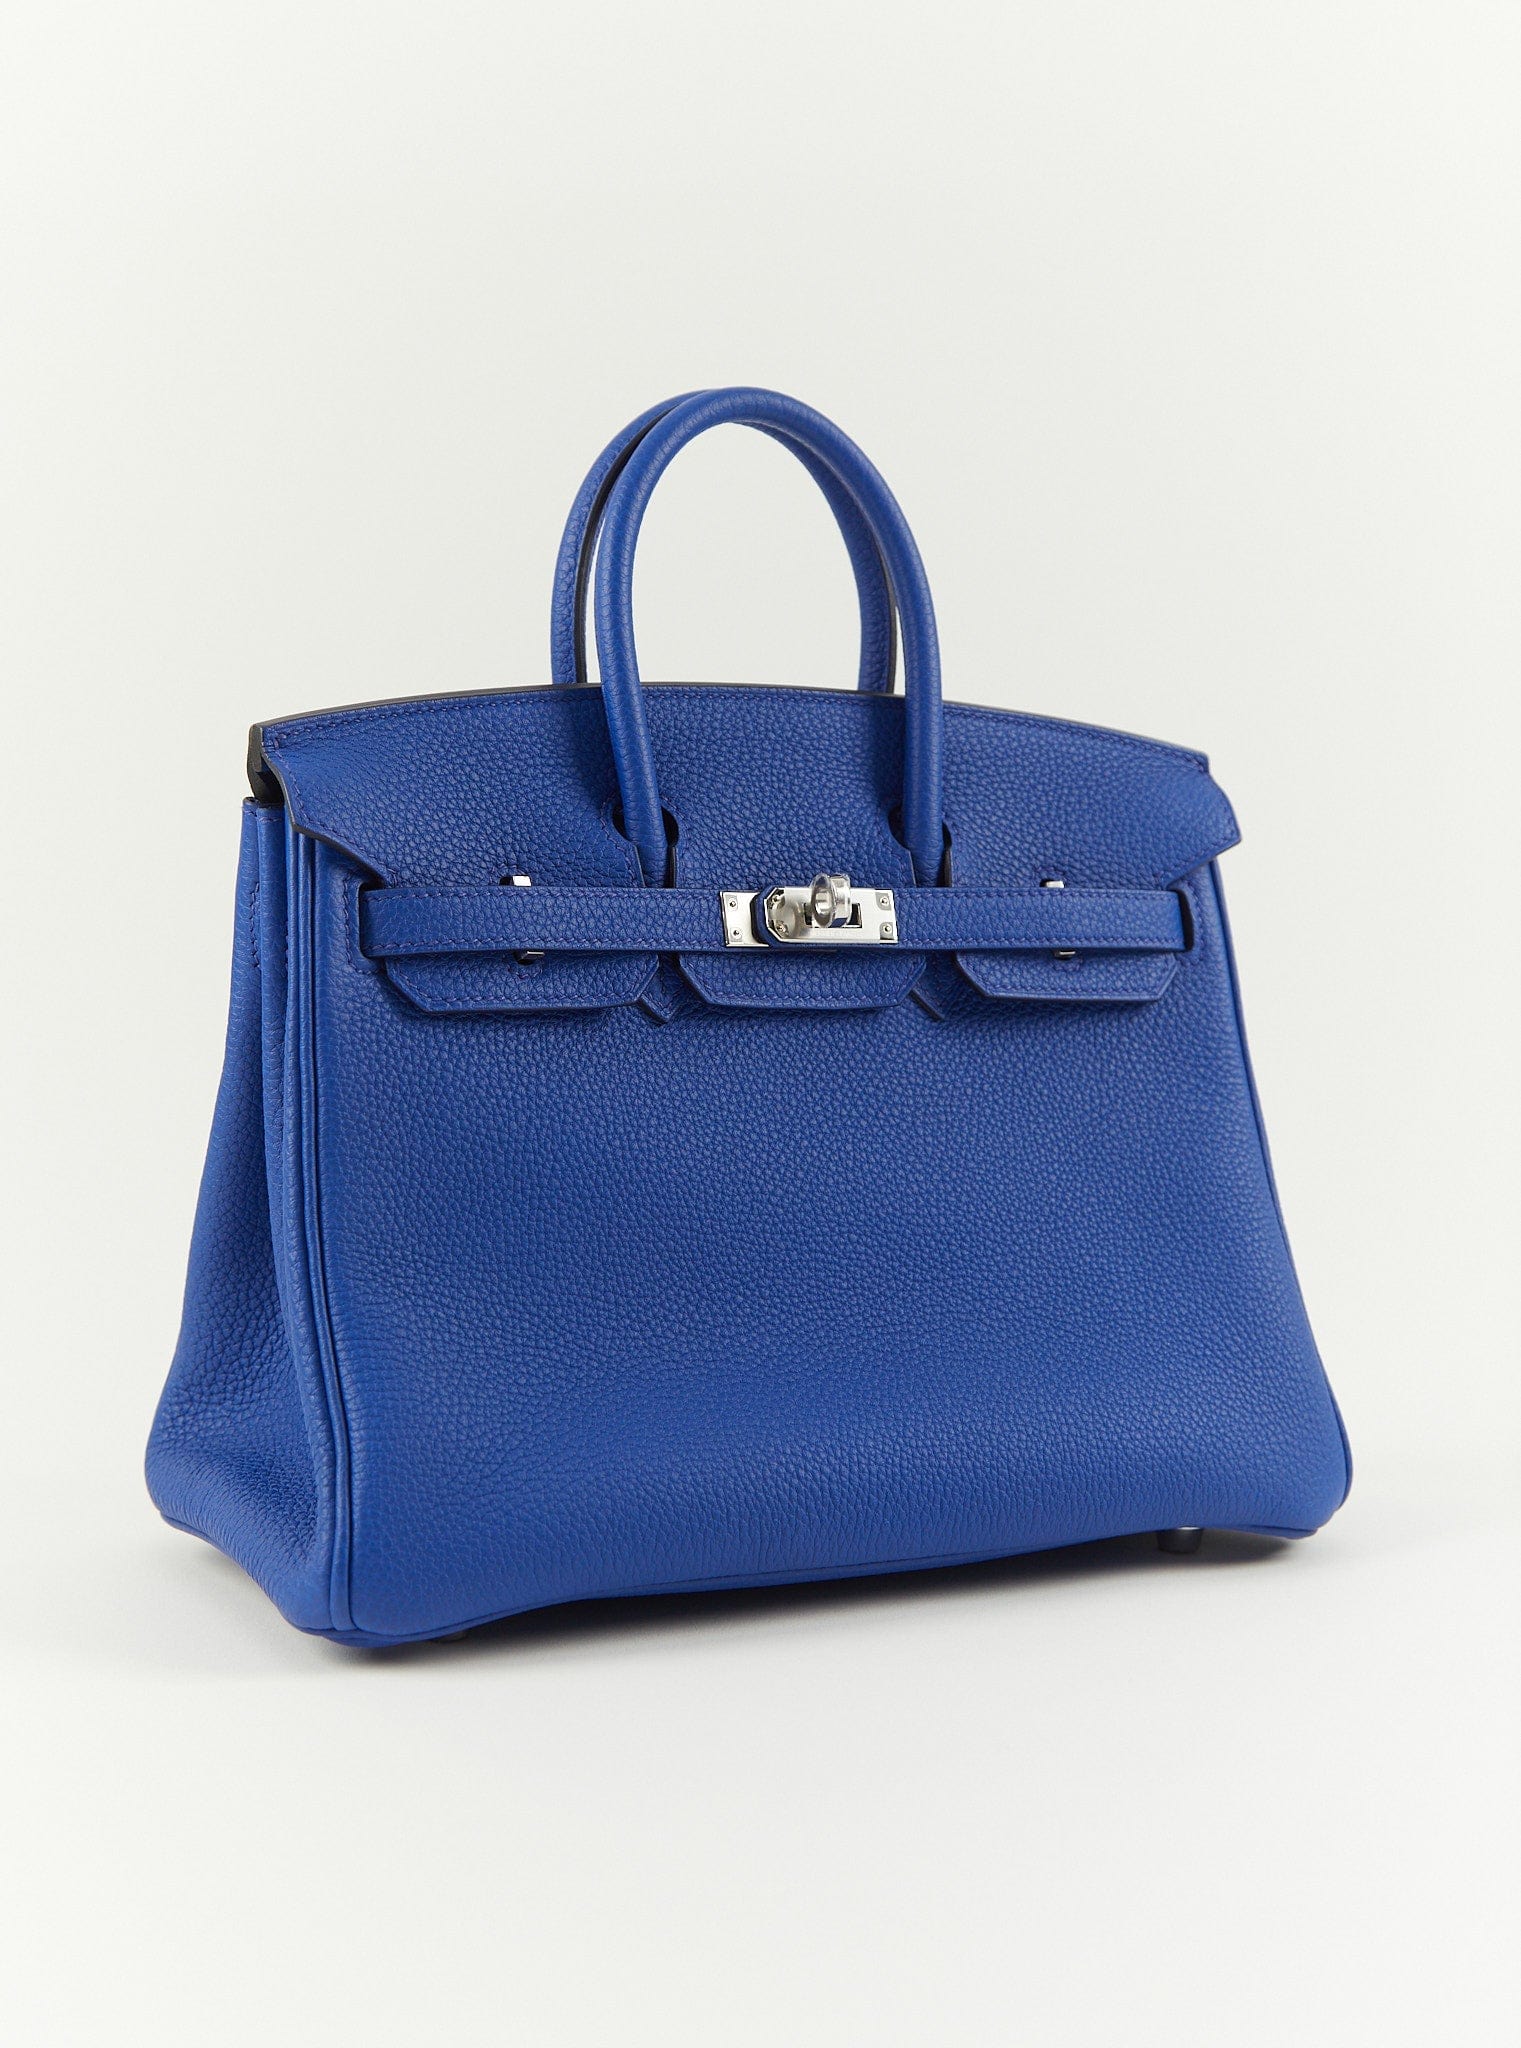 LuxuryVault HERMÈS BIRKIN 25CM BLUE ROYAL Togo Leather with Palladium Hardware